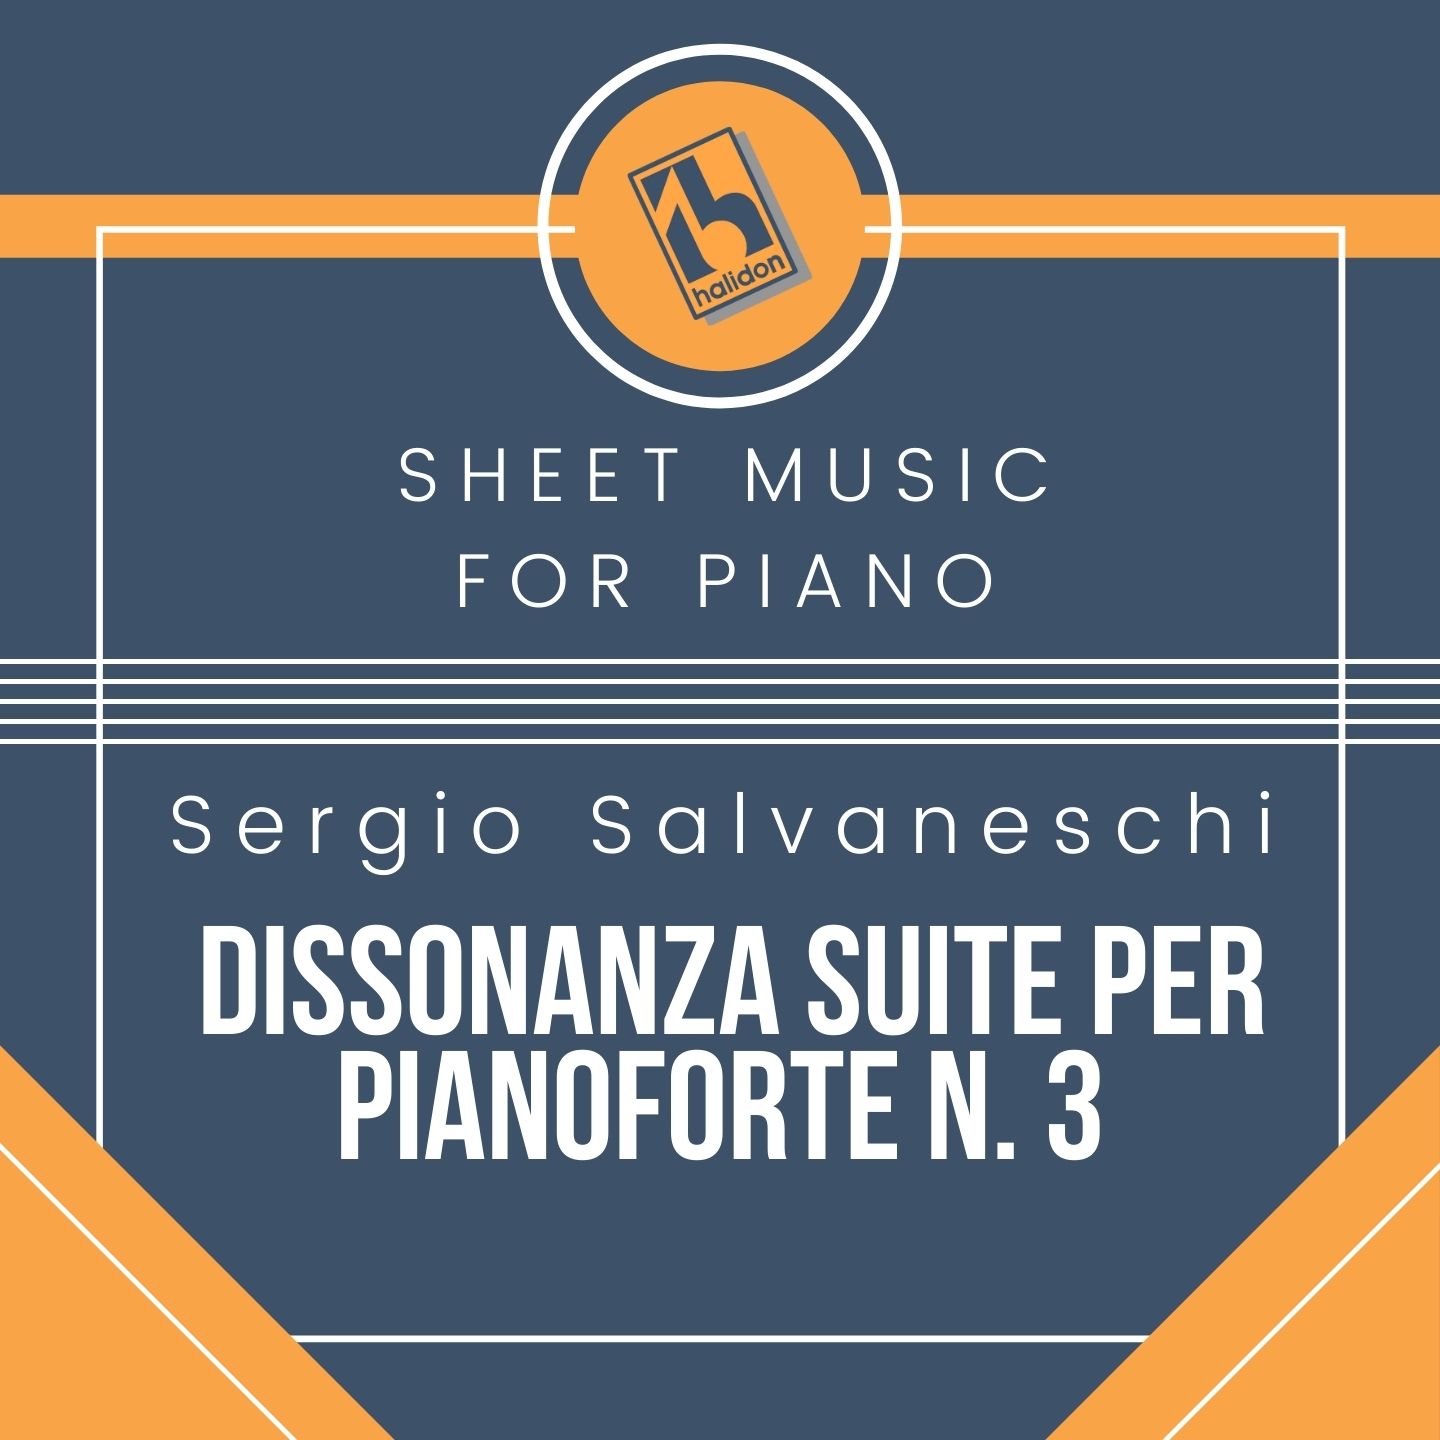 Sergio Salvaneschi - Dissonanza n. 3 - Piano Suite